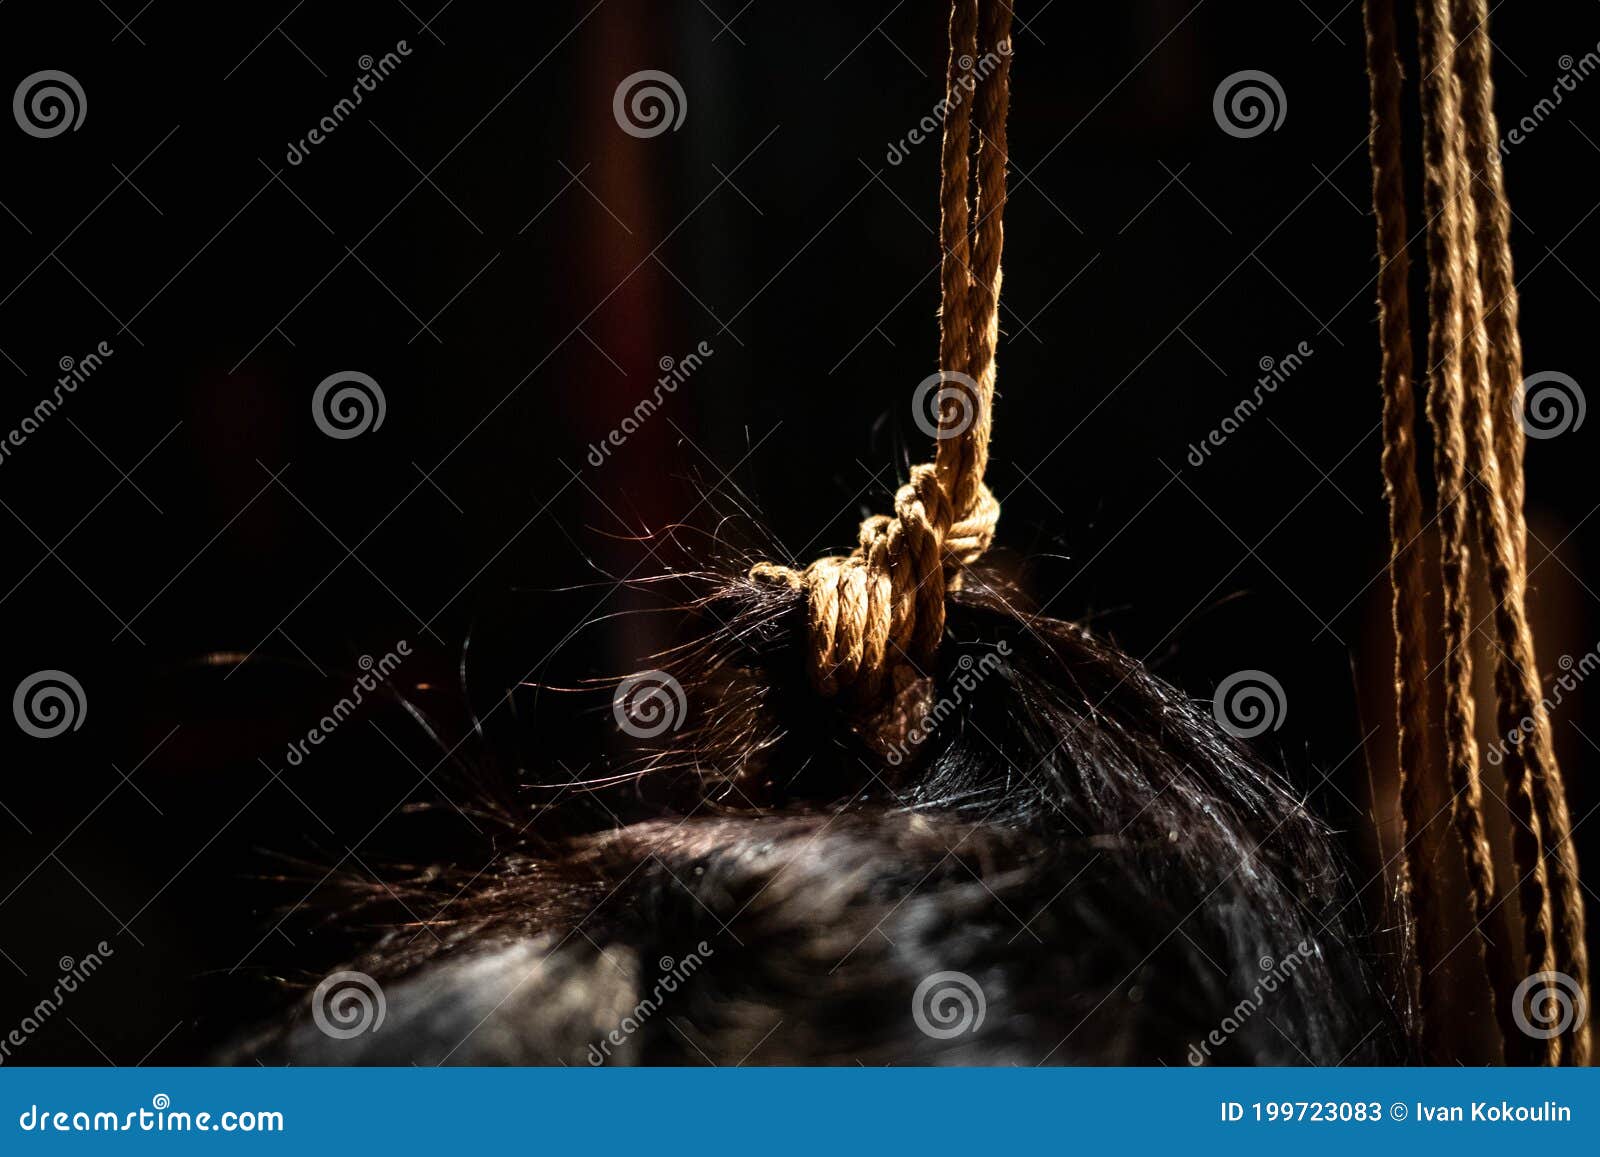 Shibari Ropes Tight on Model Hair Close Up Stock Image - Image of